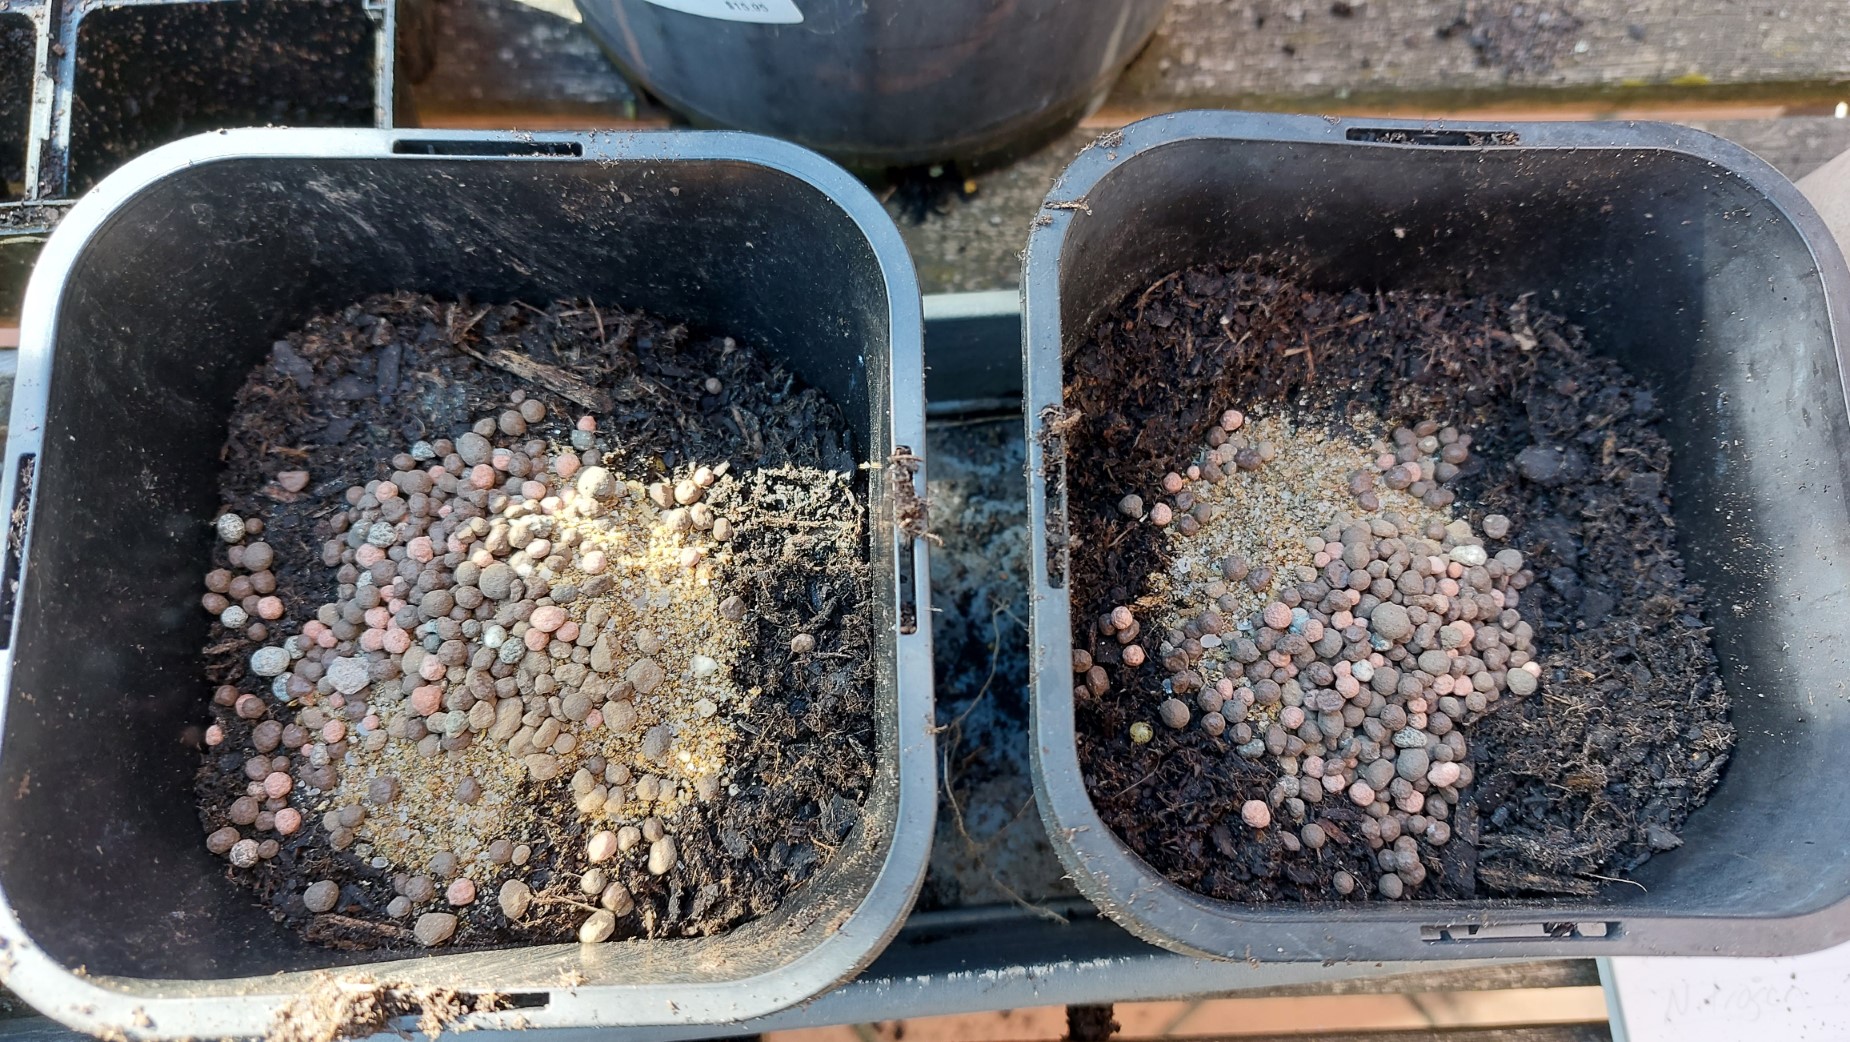 Fertiliser dumped into the pots